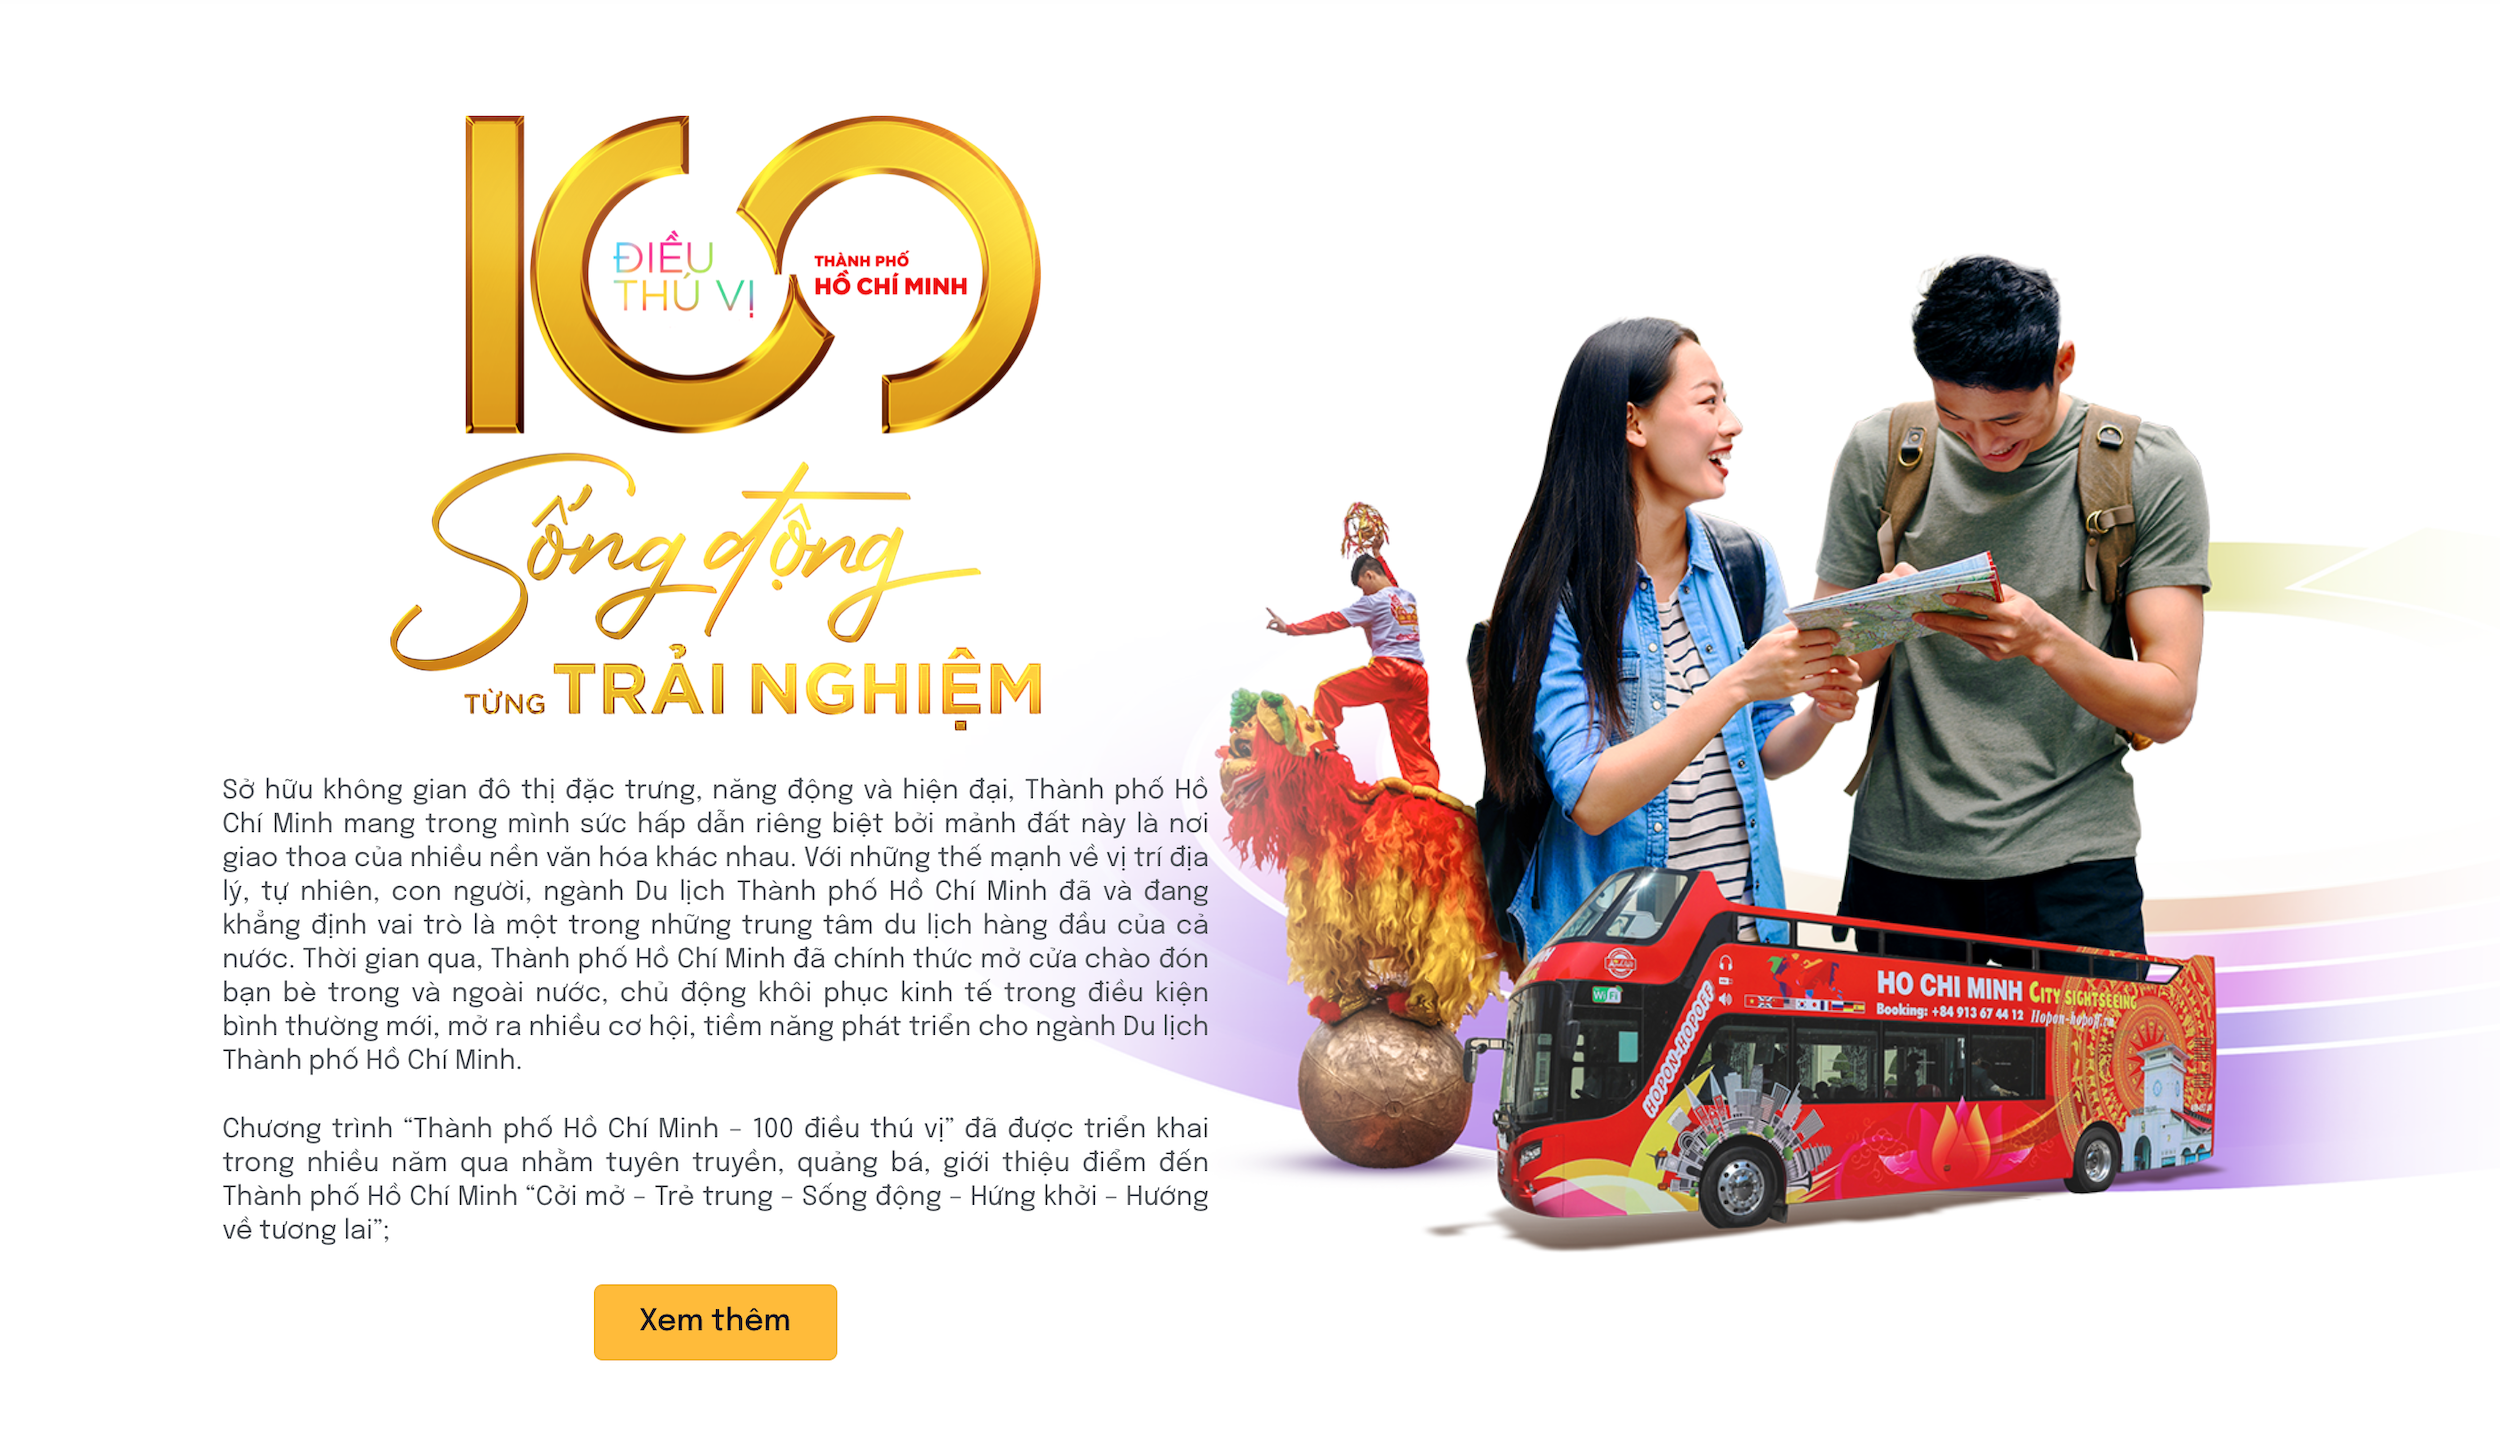 Chương trình “Thành phố Hồ Chí Minh – 100 điều thú vị”